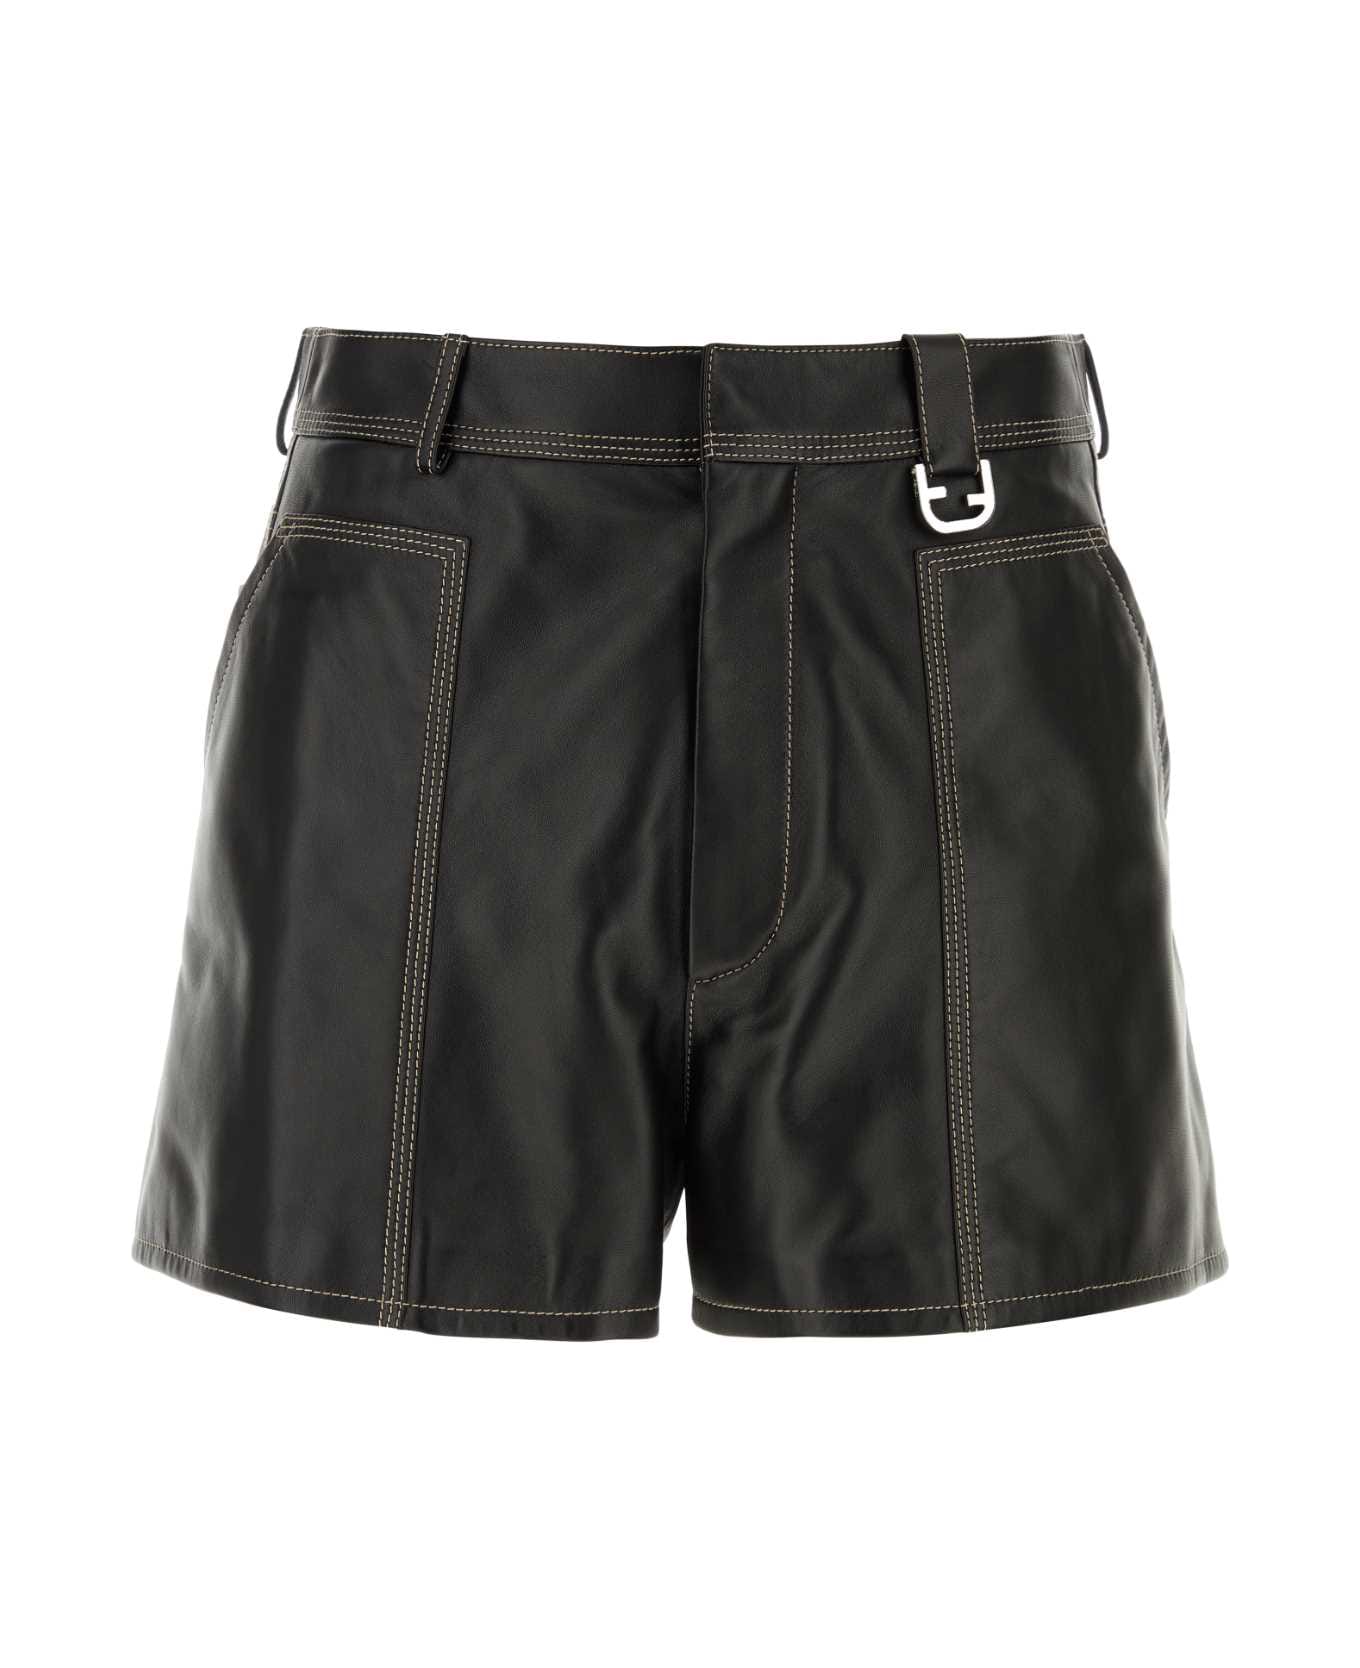 Fendi Leather Shorts - Black